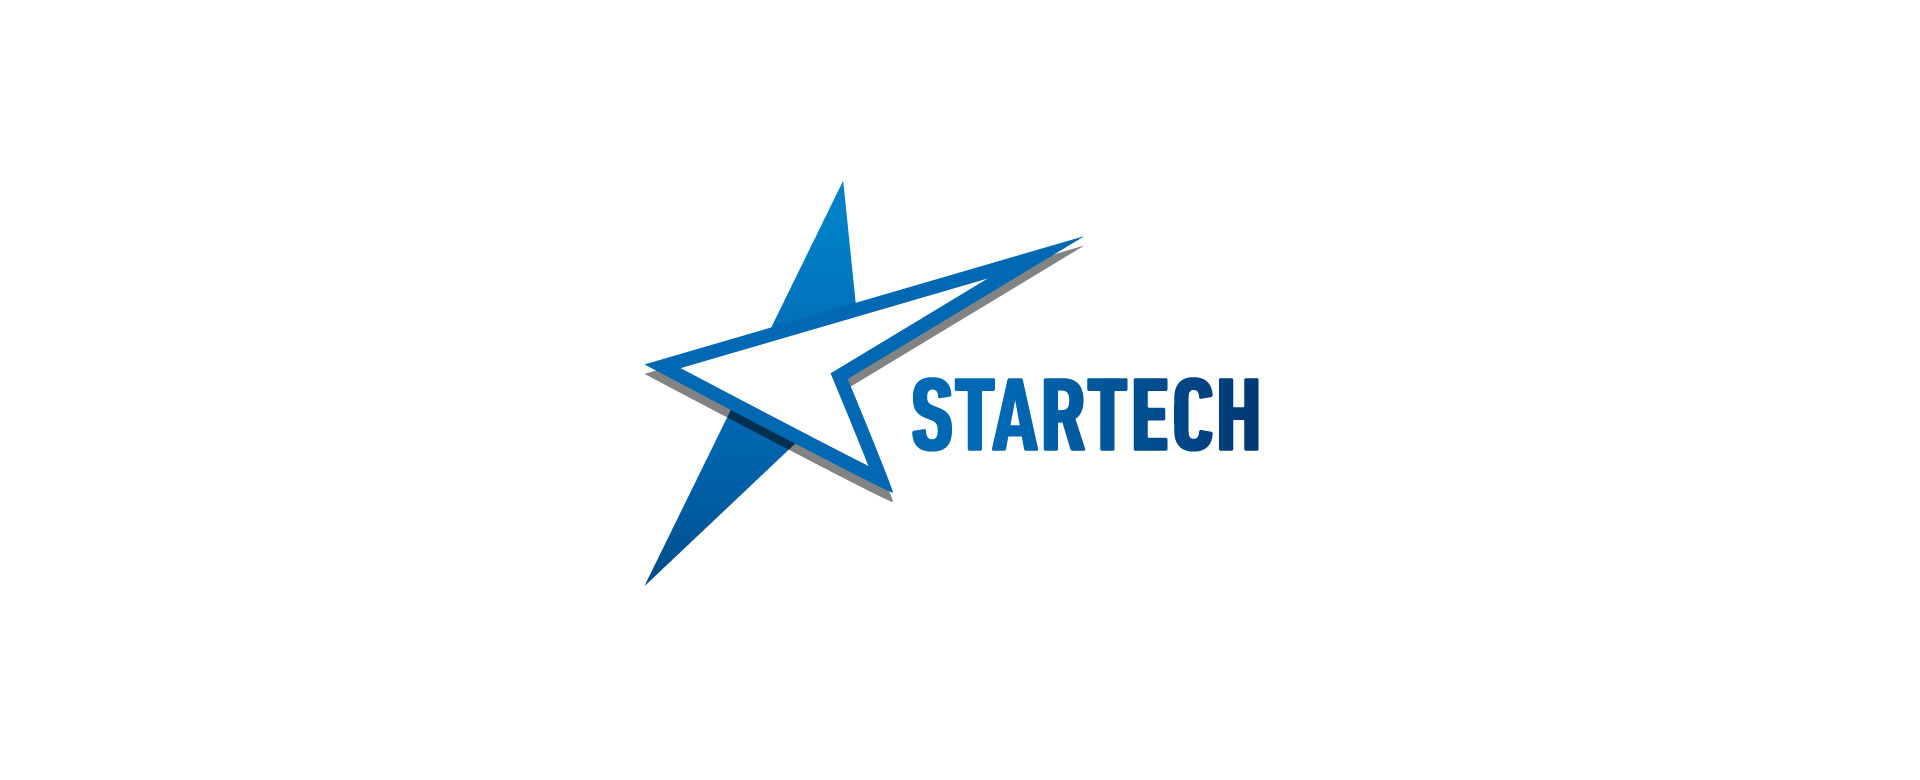 StarTech конкурс за подршку иновацијама и дигиталној трансформацији